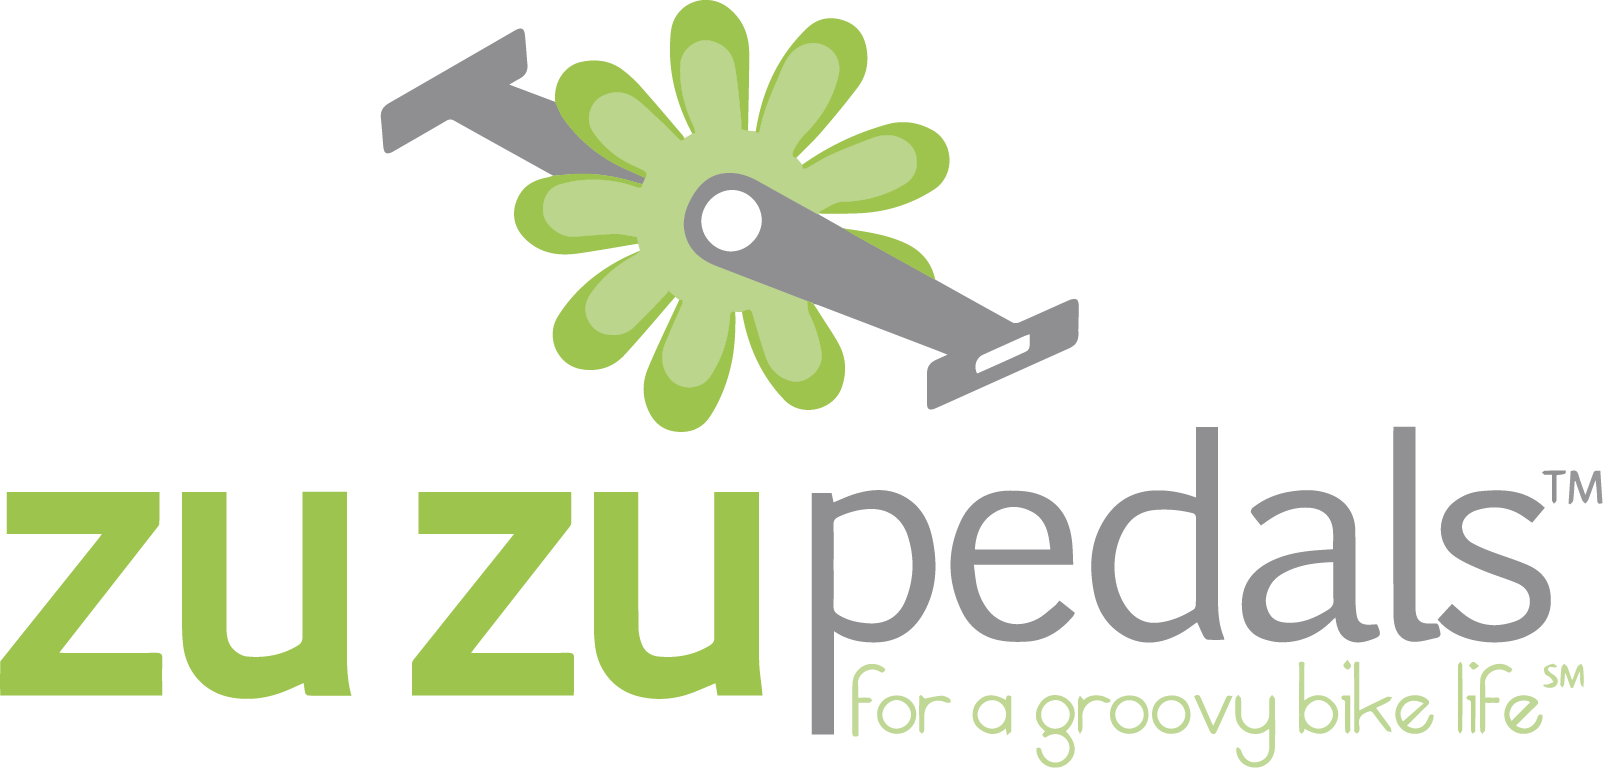 ZuZu Pedals Home Page